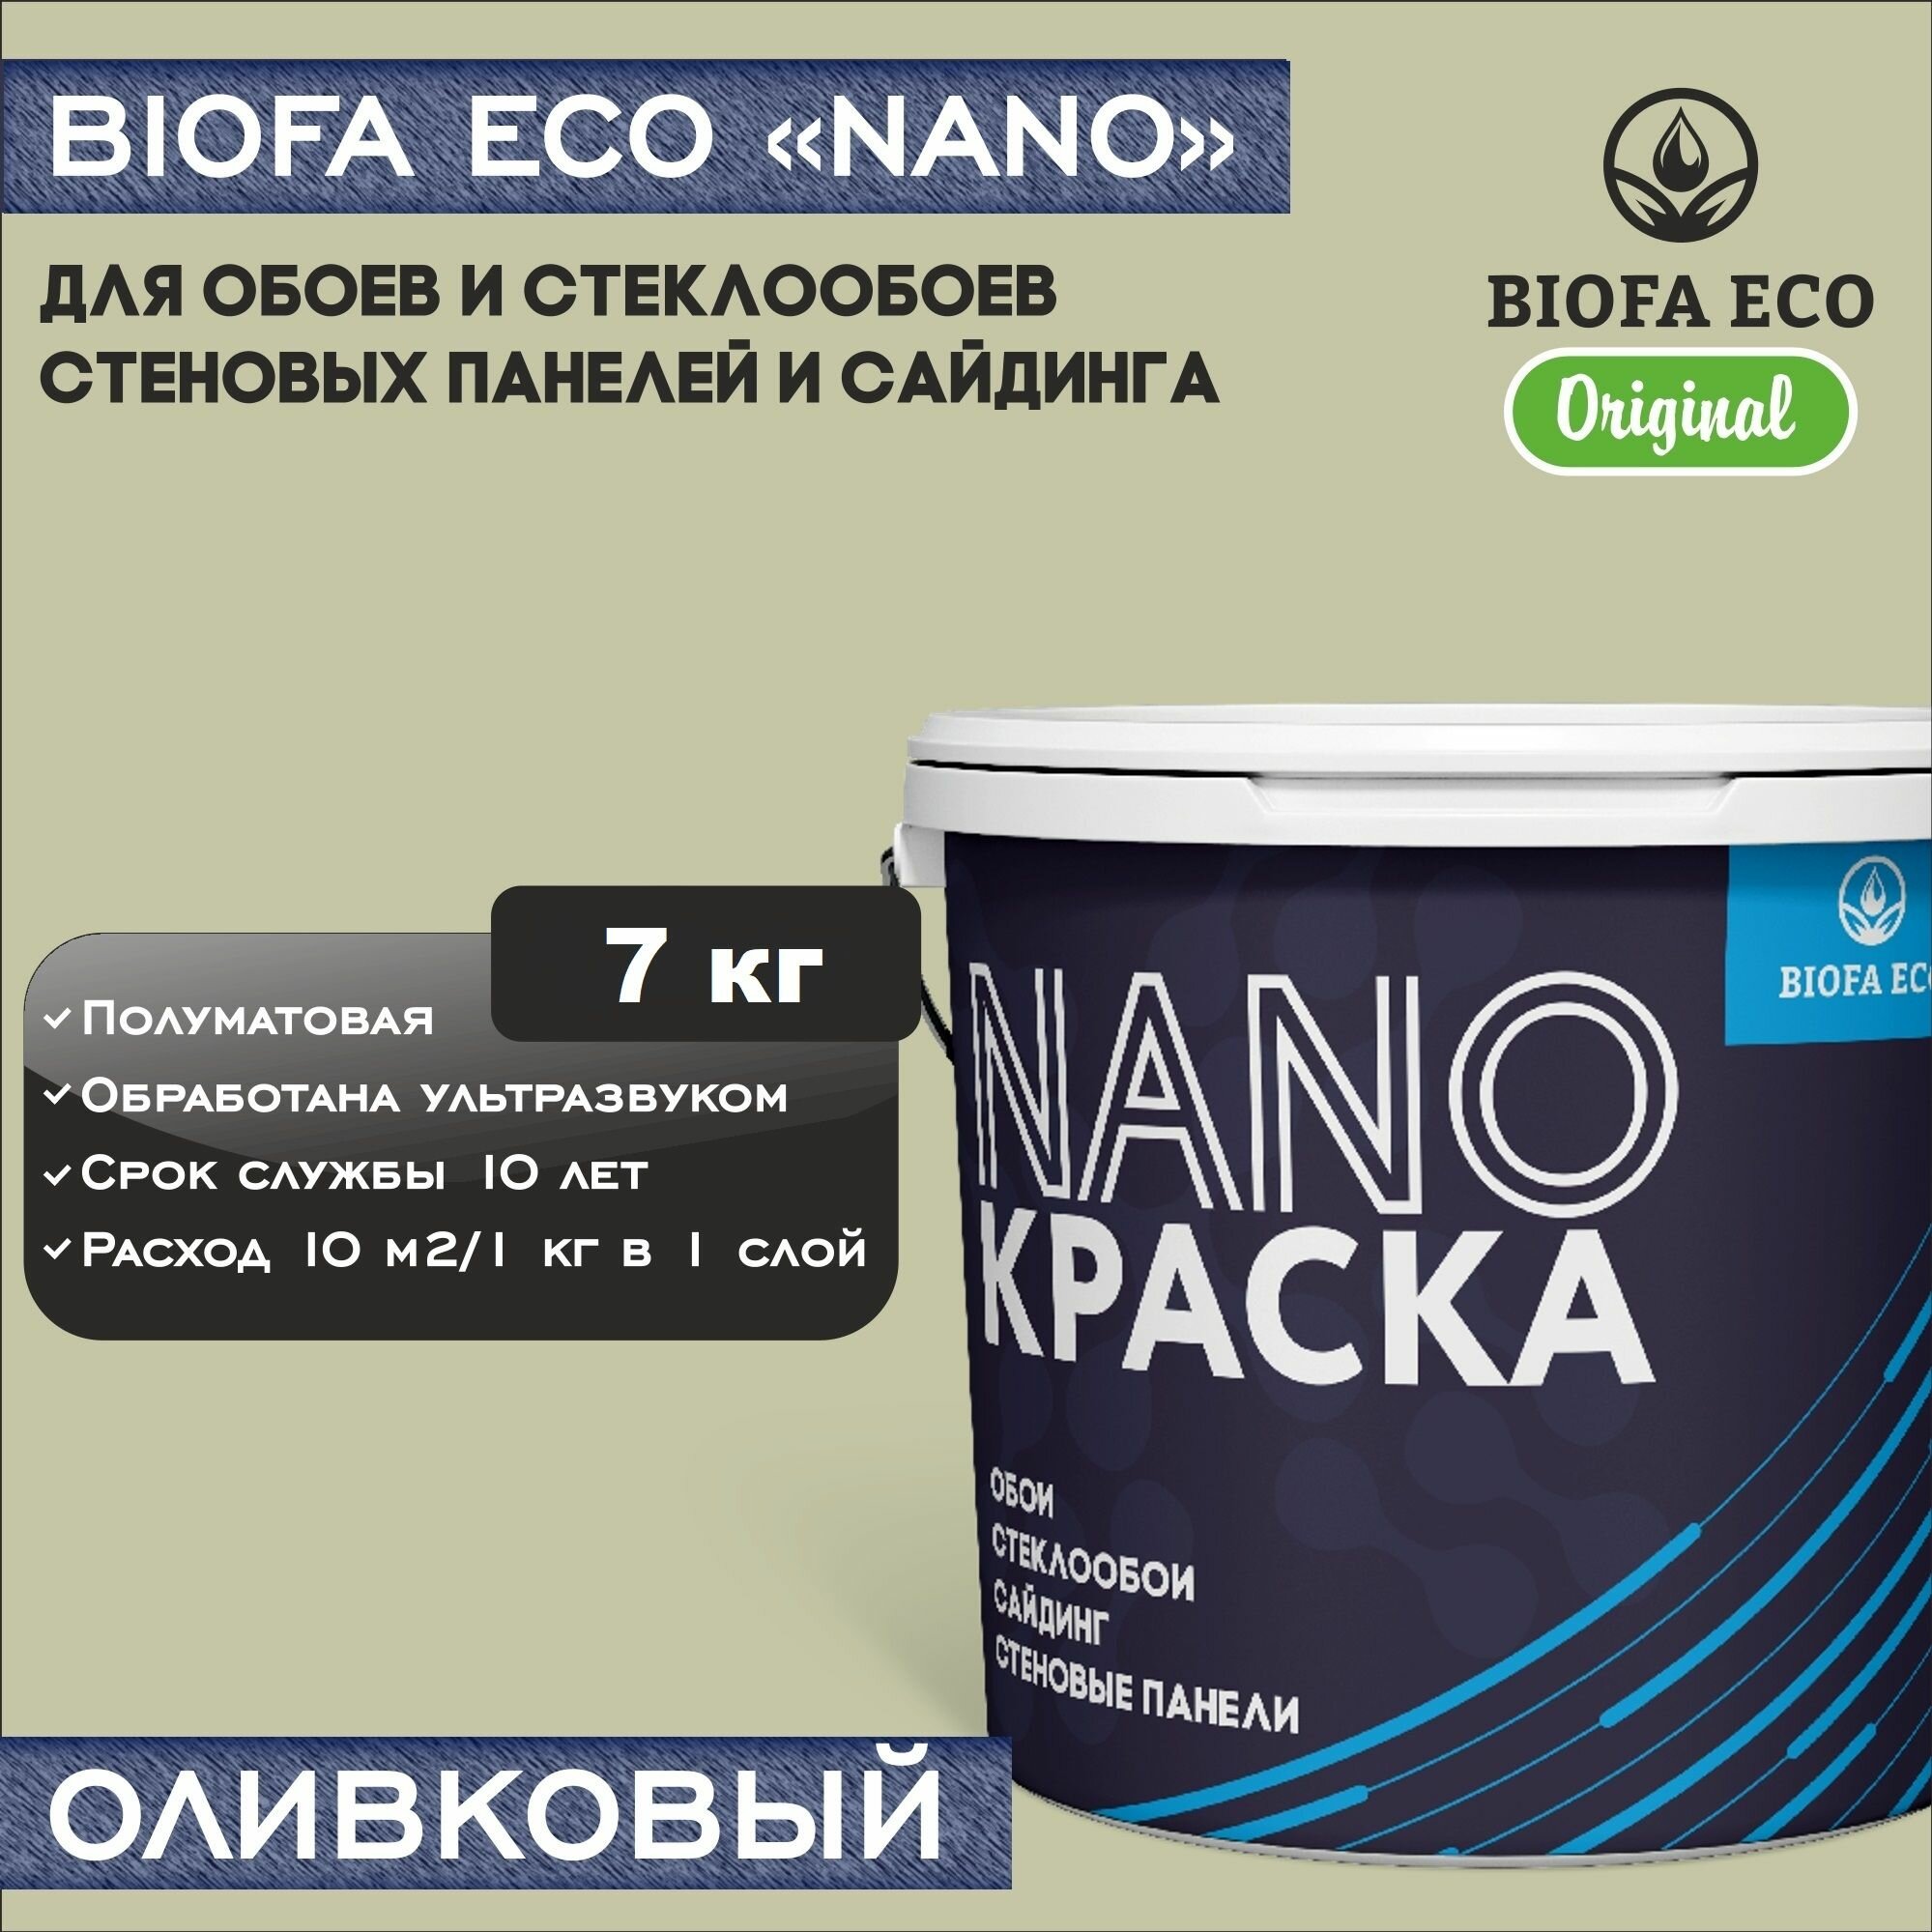 Краска BIOFA ECO NANO для обоев, стеклообоев, стеновых панелей и сайдинга, адгезионная, полуматовая, цвет оливковый, 7 кг